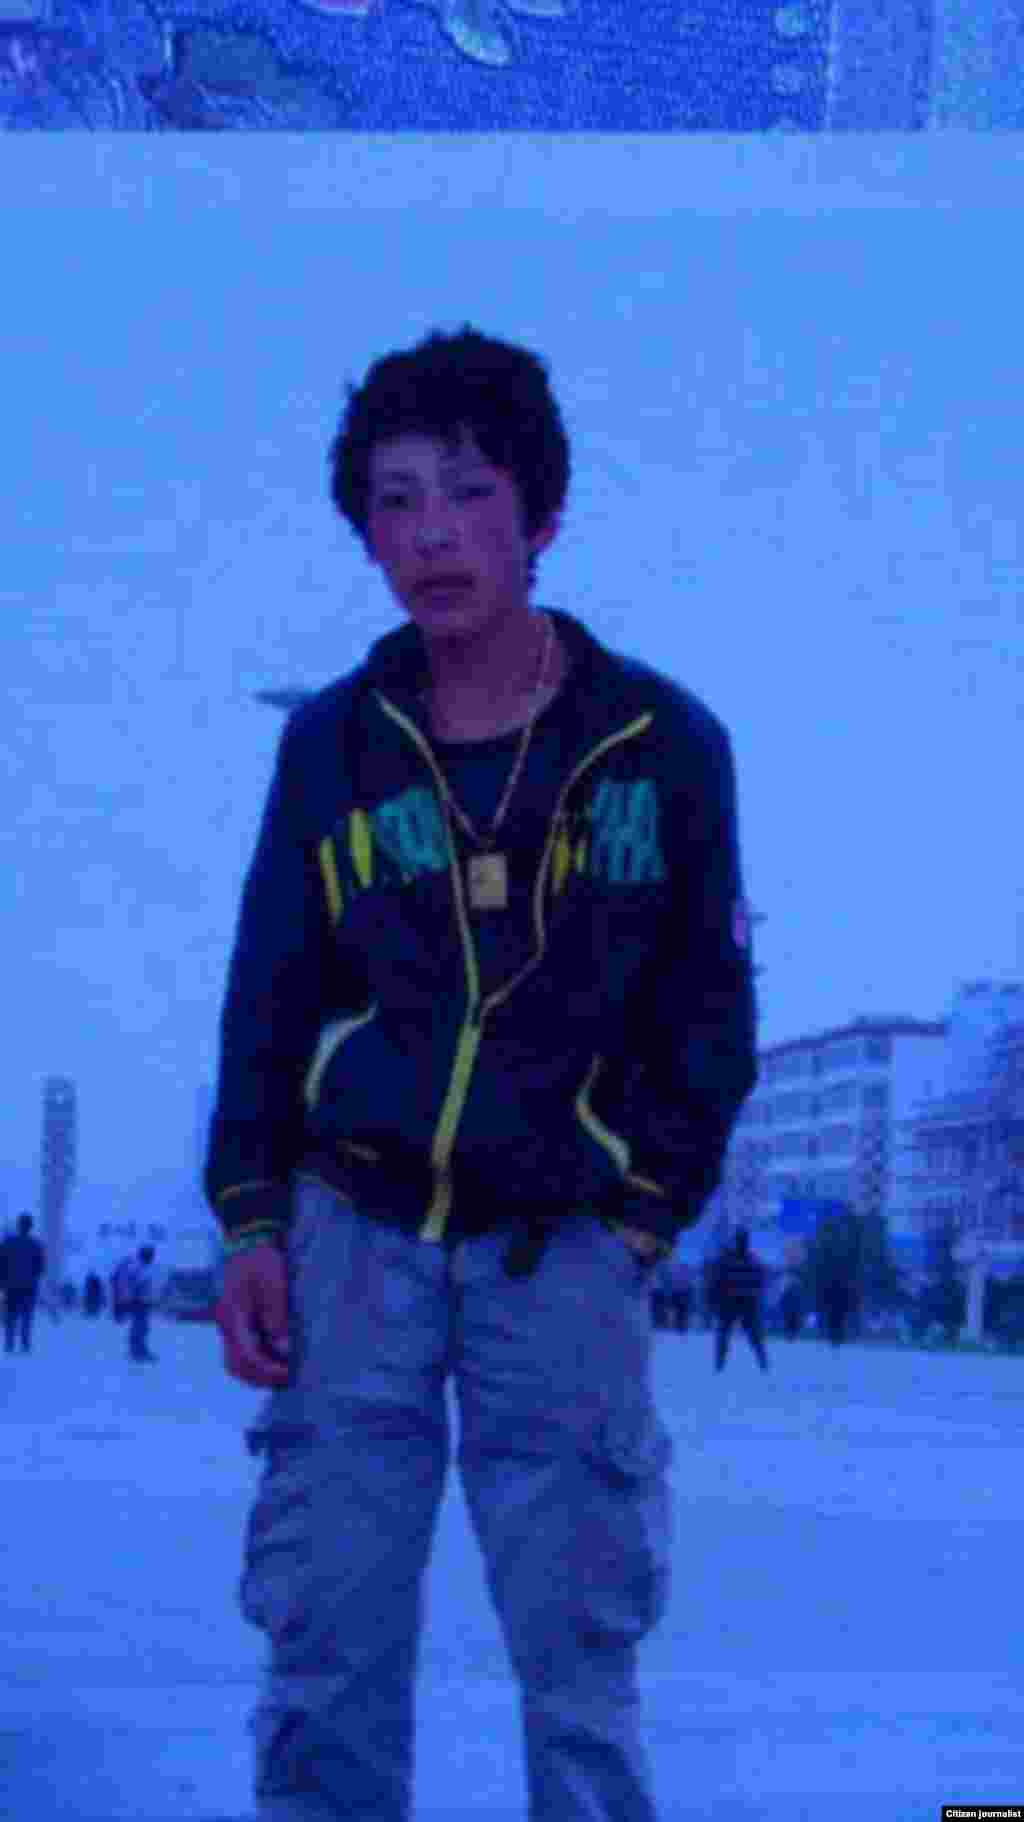 18岁的藏族青年贡曲次仁在甘肃省甘南州夏河县为抗议中国的西藏政策自焚身亡。这是他生前的照片。(当地民众提供给美国之音藏语组)